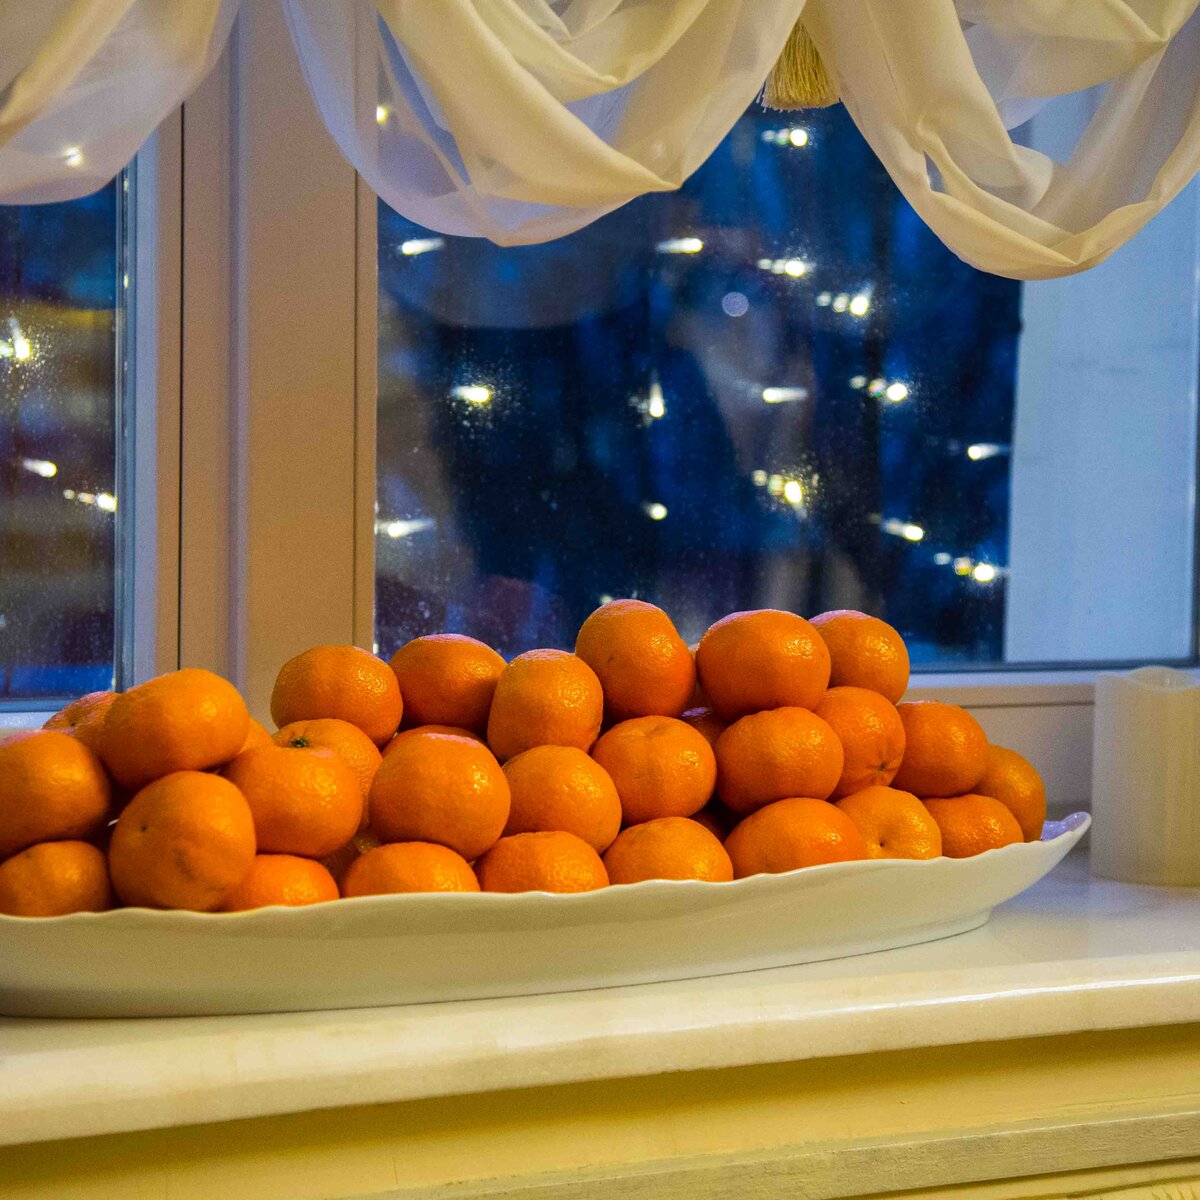 Мандарины на тарелке. Мандарины в тарелке. Турецкие мандарины. Мандарины на окне. Большой мандарин.